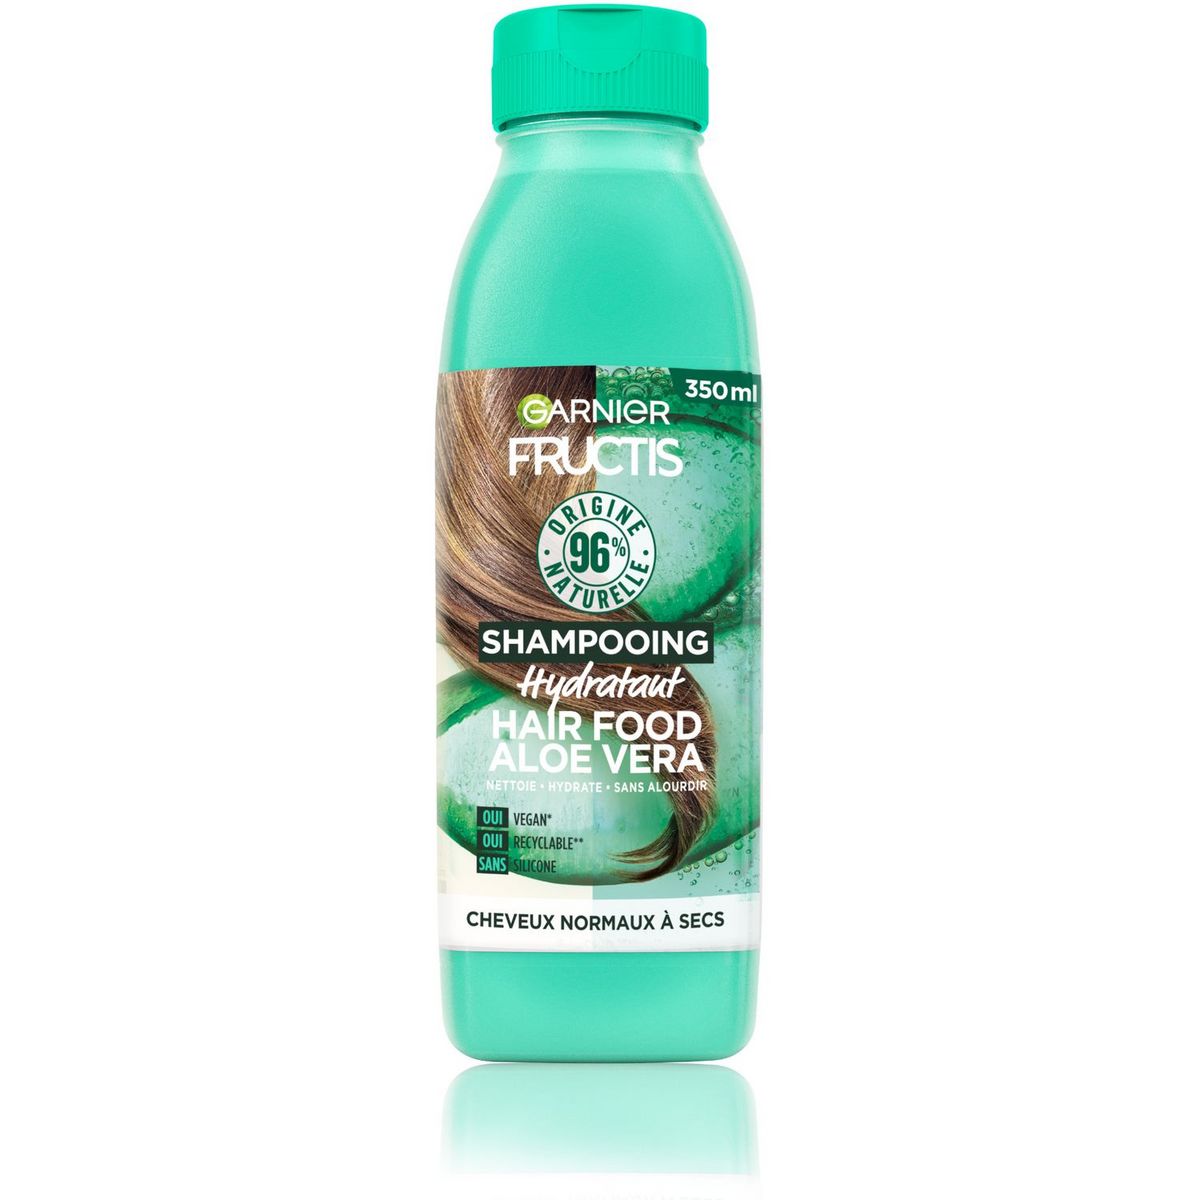 FRUCTIS Hair Food Shampooing hydratant vegan aloé vera pour cheveux normaux à secs 350ml